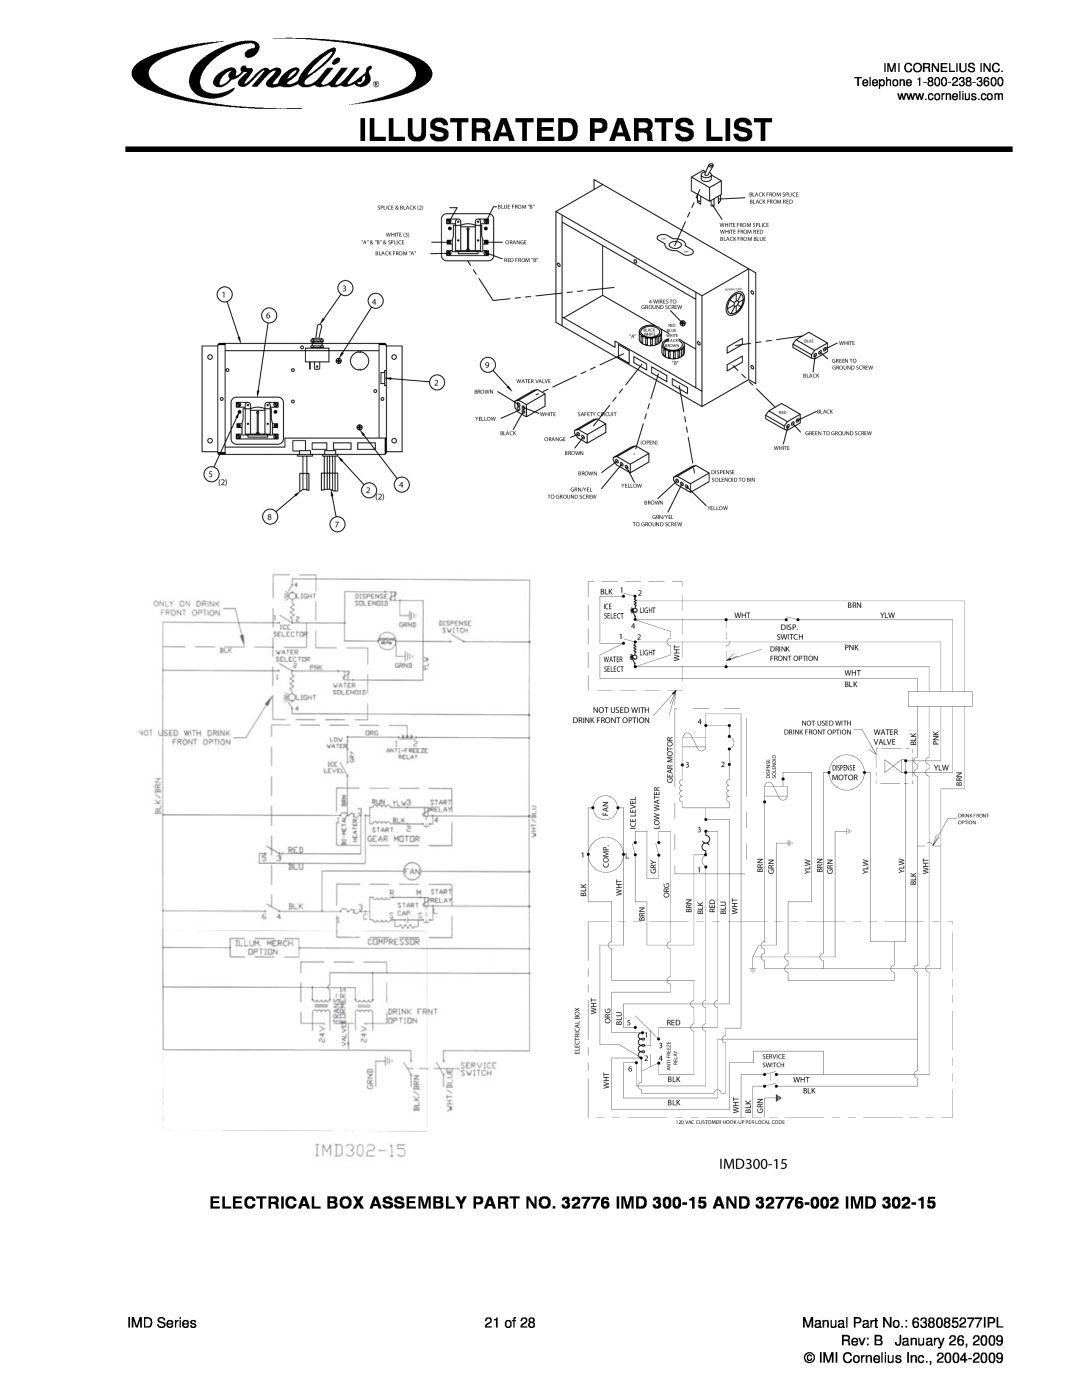 Cornelius IMD300-30, IMD600-30, IMD600-90 manual Illustrated Parts List, IMD300-15 